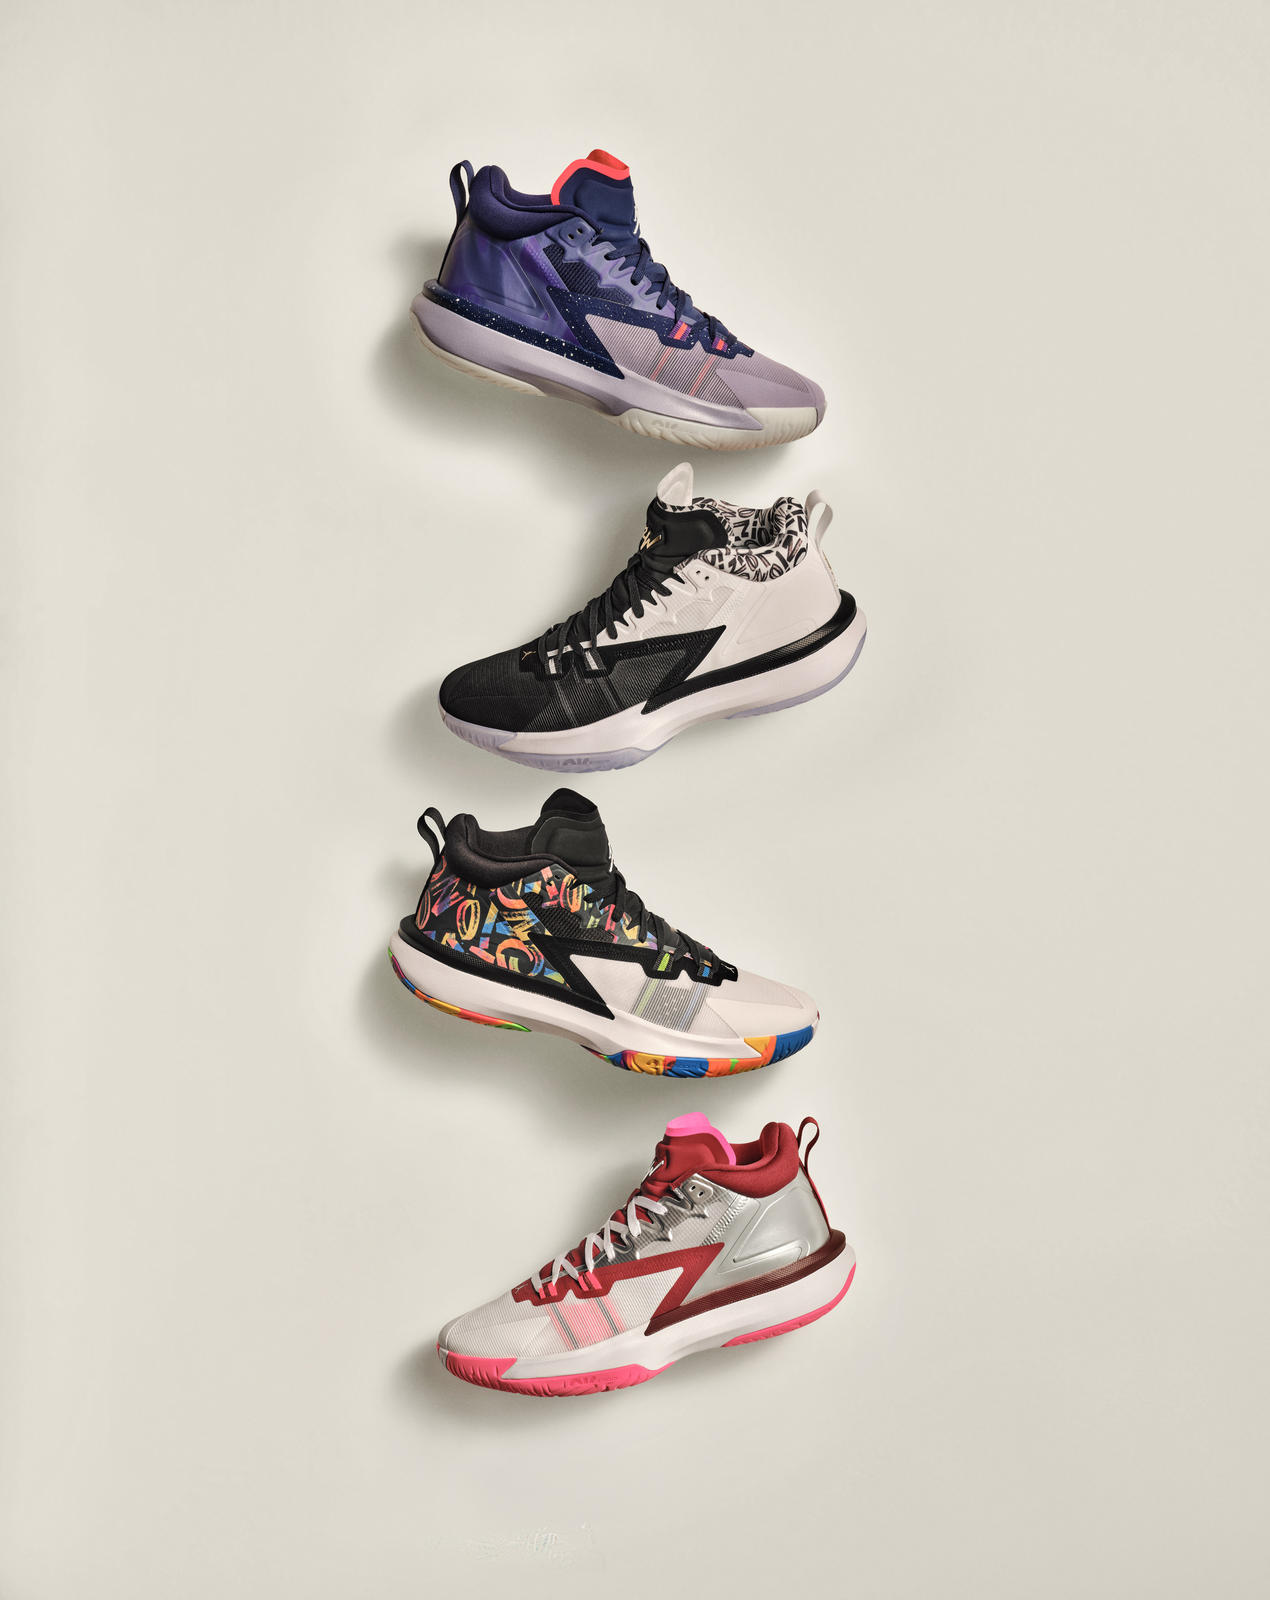 ZION de la NBA ya tiene ZAPATILLAS PROPIAS zapatillasysneakers.com